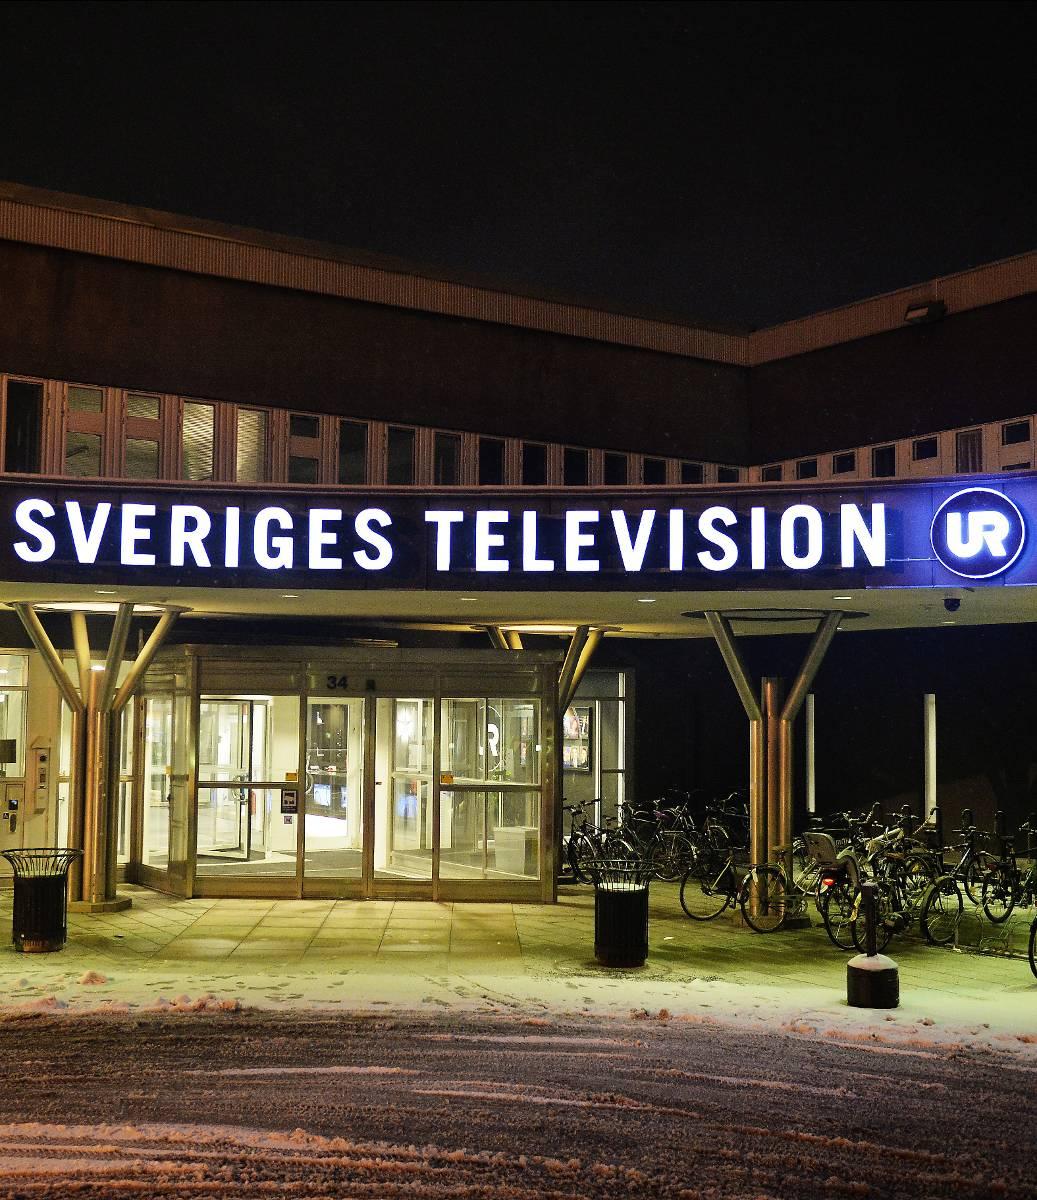 Kränkte SVT-profilen 35-åringen, har hatat och hånat SVT:s programledare Sannah Salameh i en Flashbacktråd med över 400 inlägg. I dag ångrar han sig djupt och vill be henne om ursäkt via Aftonbladet.